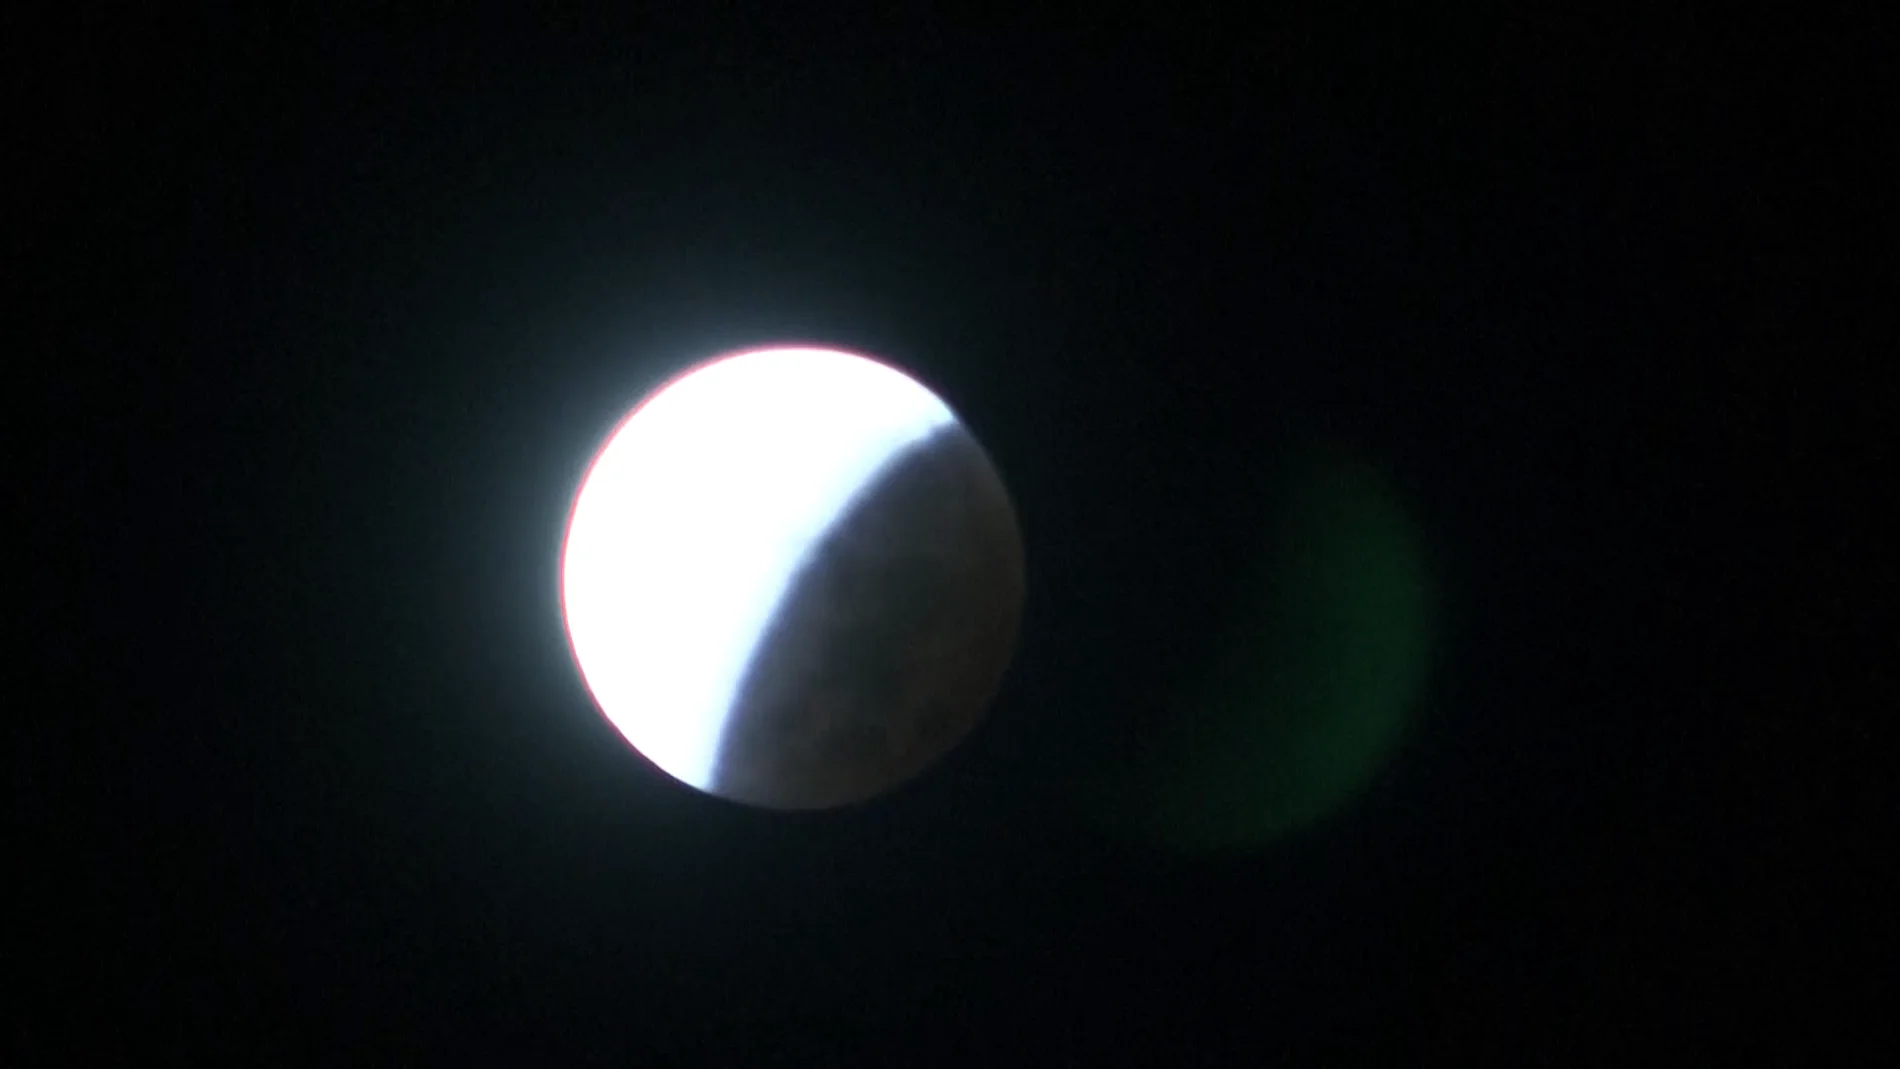 DIRECTO: Eclipse lunar de hoy viernes 19 de noviembre, vídeo en streaming